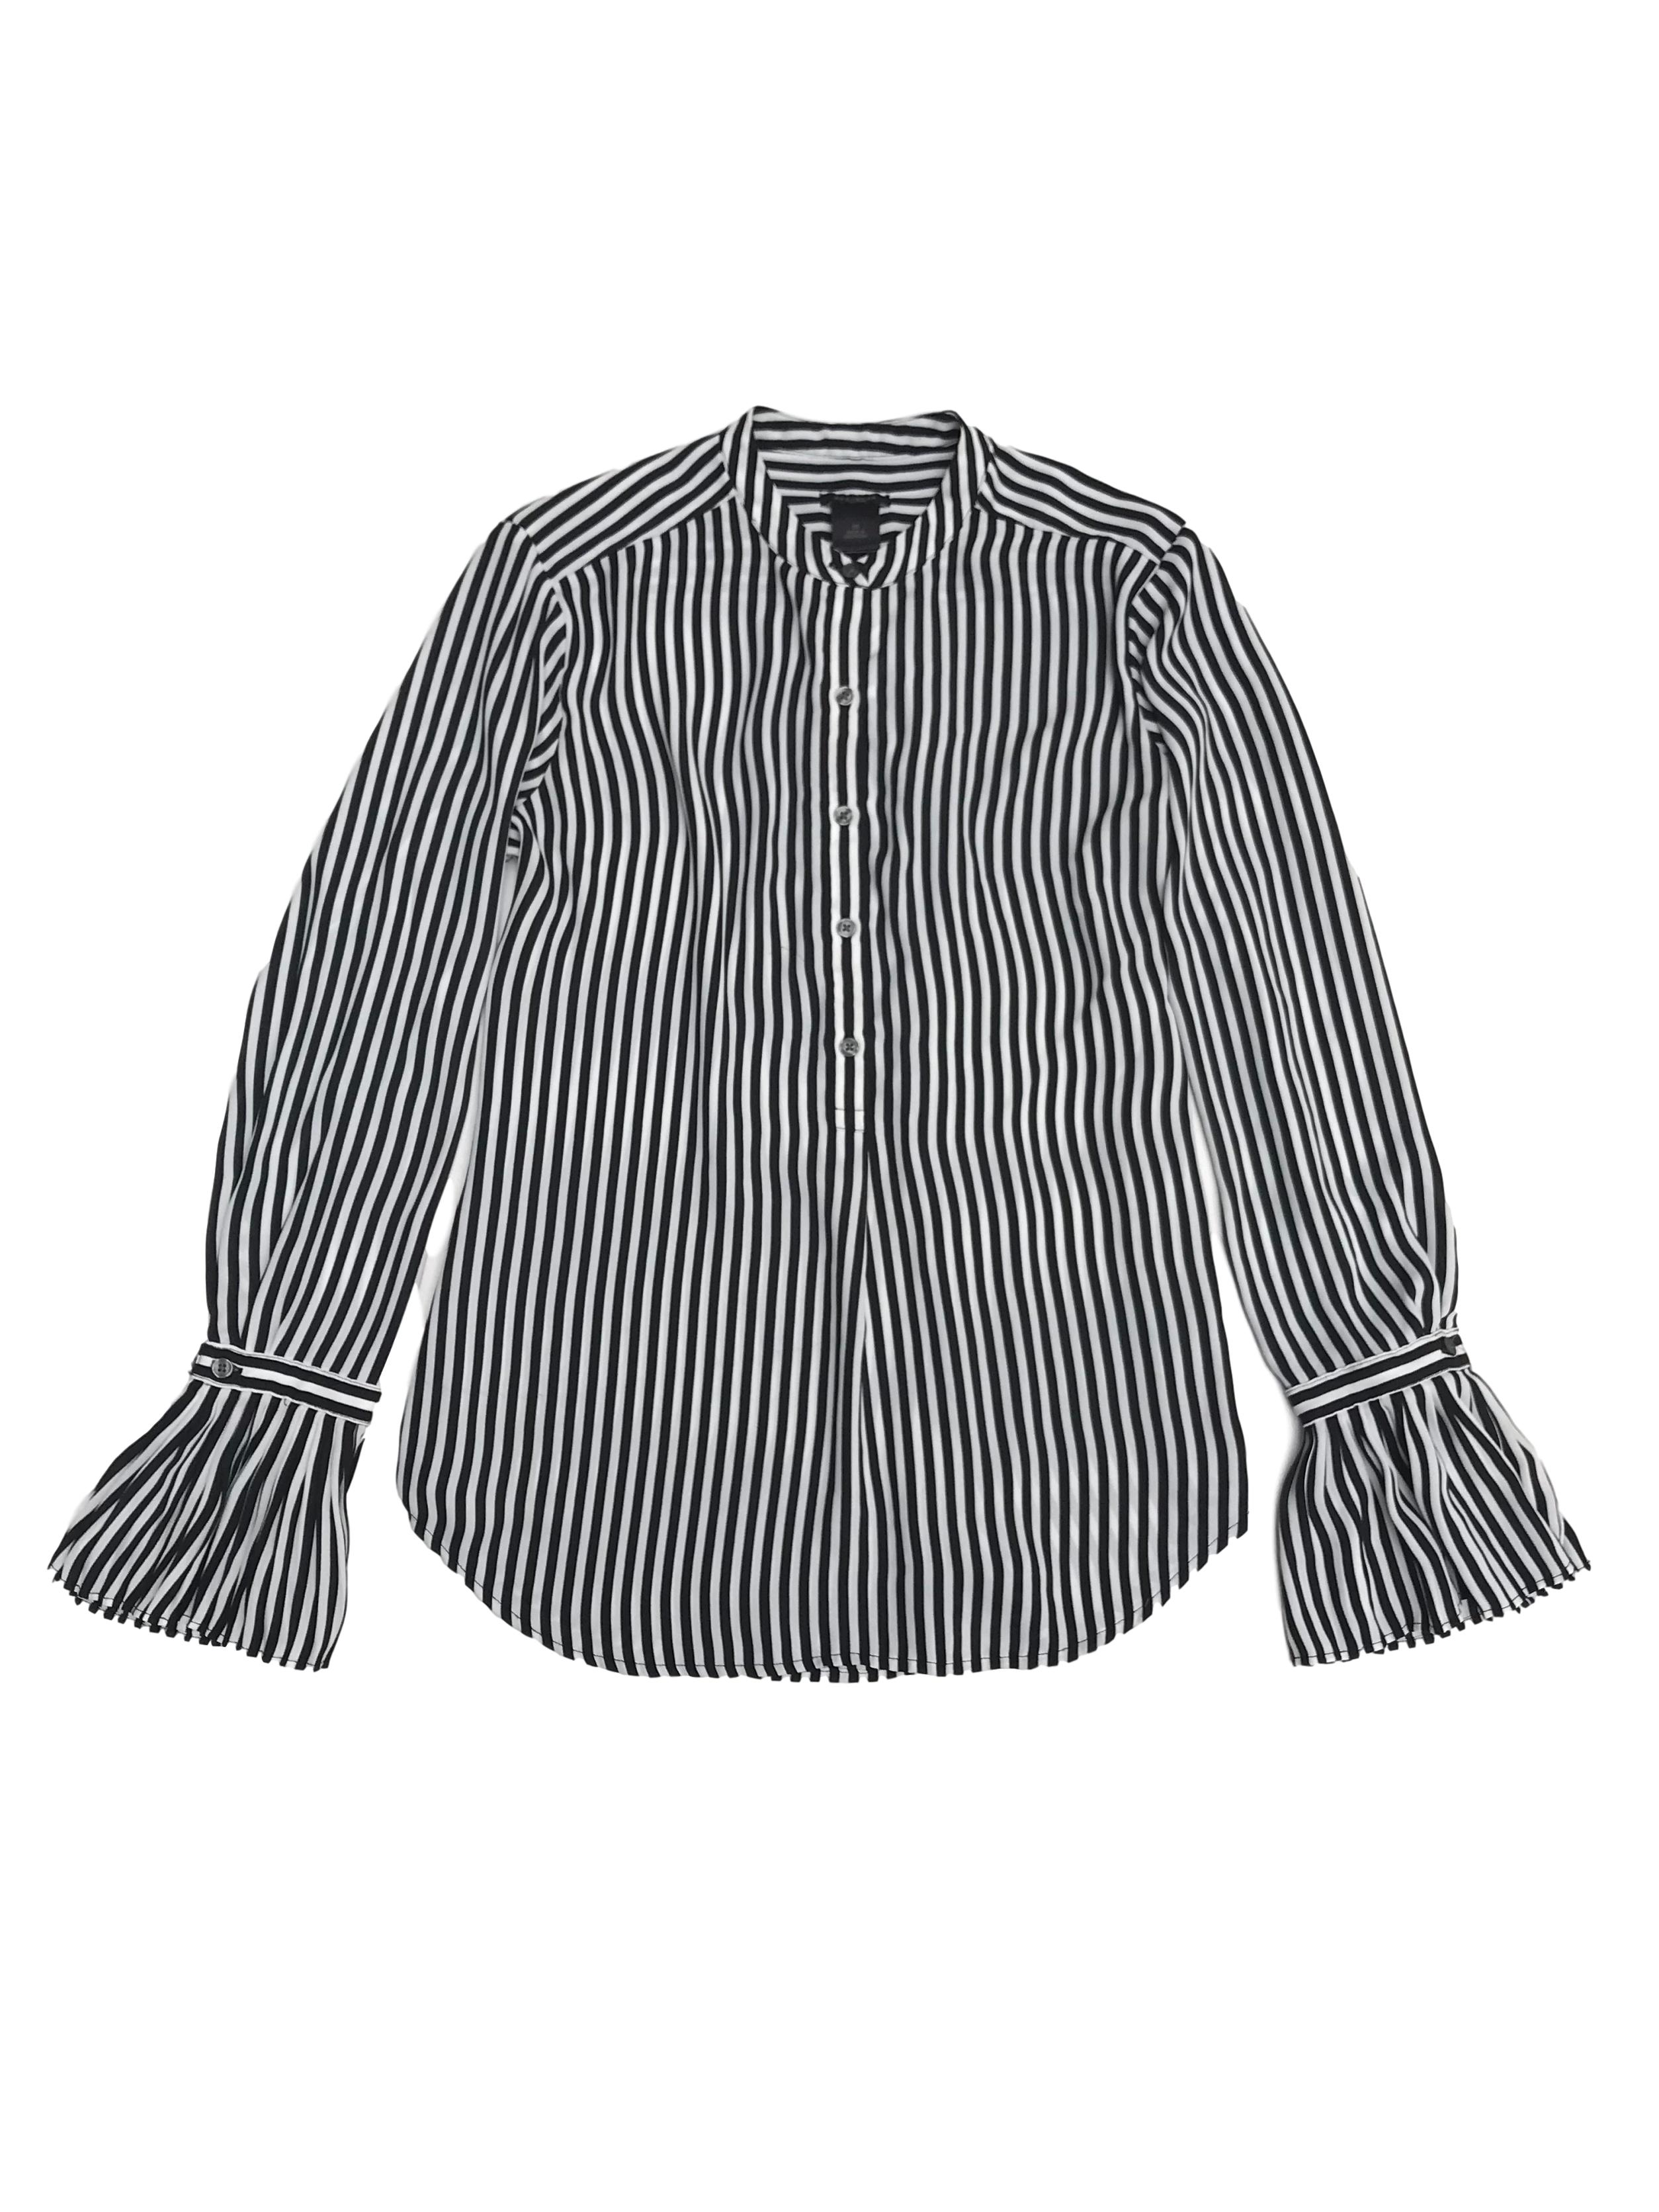 Blusa Ann Taylor de tela plana fluida a rayas blancas y negras, cuello nerú, botones en el pecho y puños campana, fit suelto. Busto 100cm Largo 50-60cm